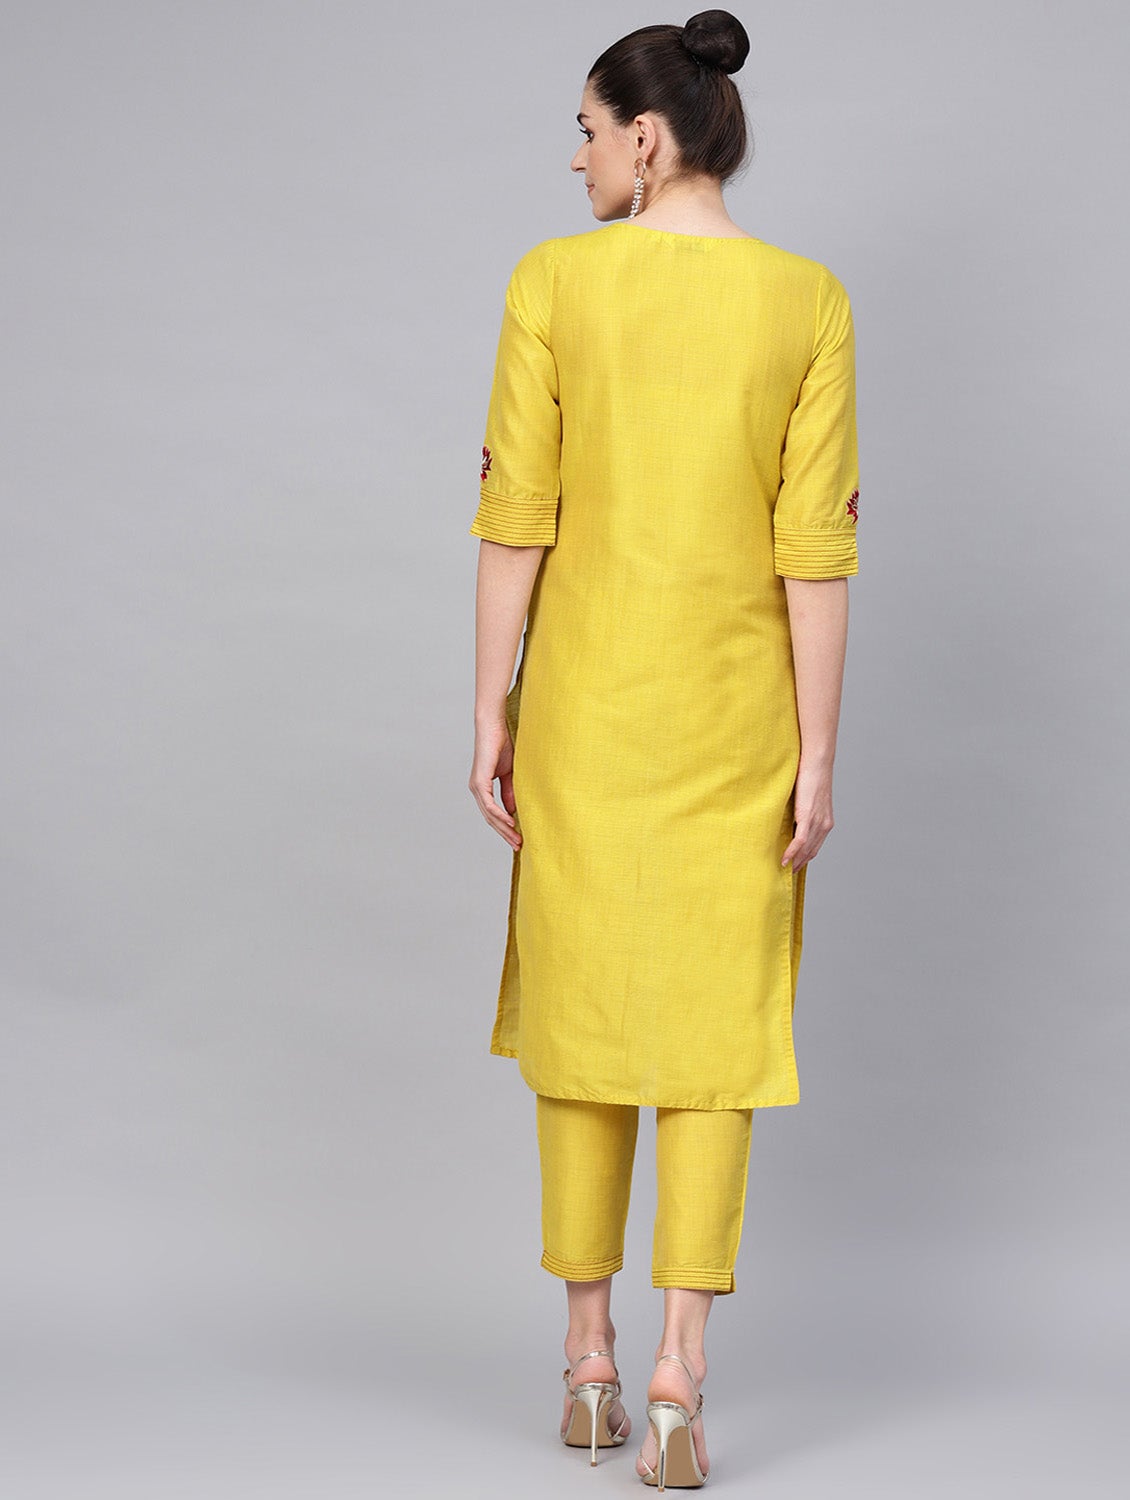 Yellow Yoke Design Handloom Straight Kurta with Trousers